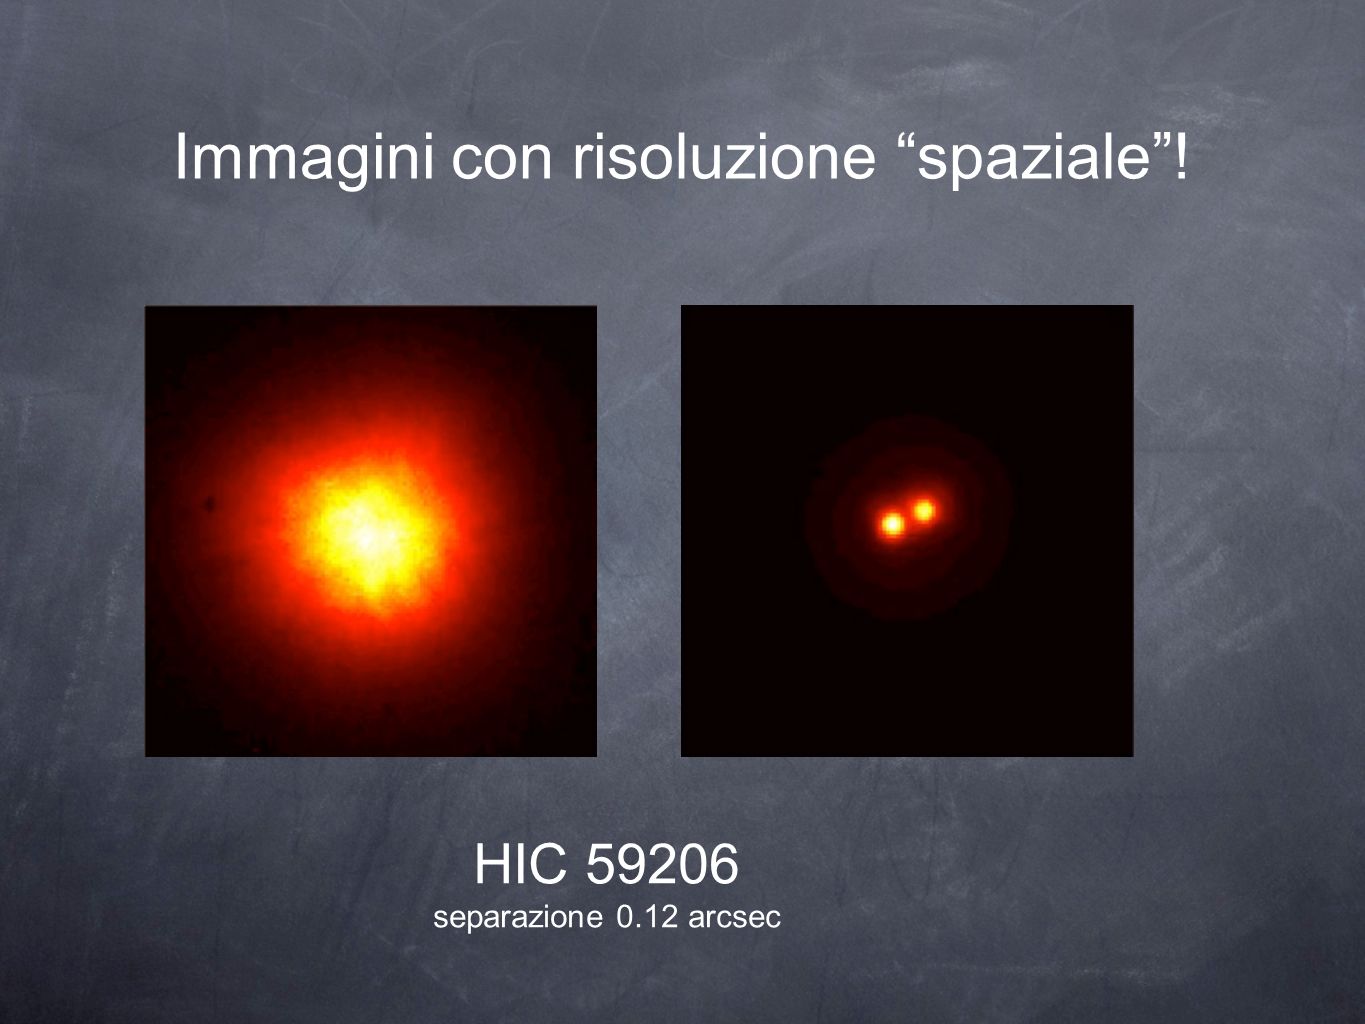 Immagini con risoluzione spaziale! HIC separazione 0.12 arcsec